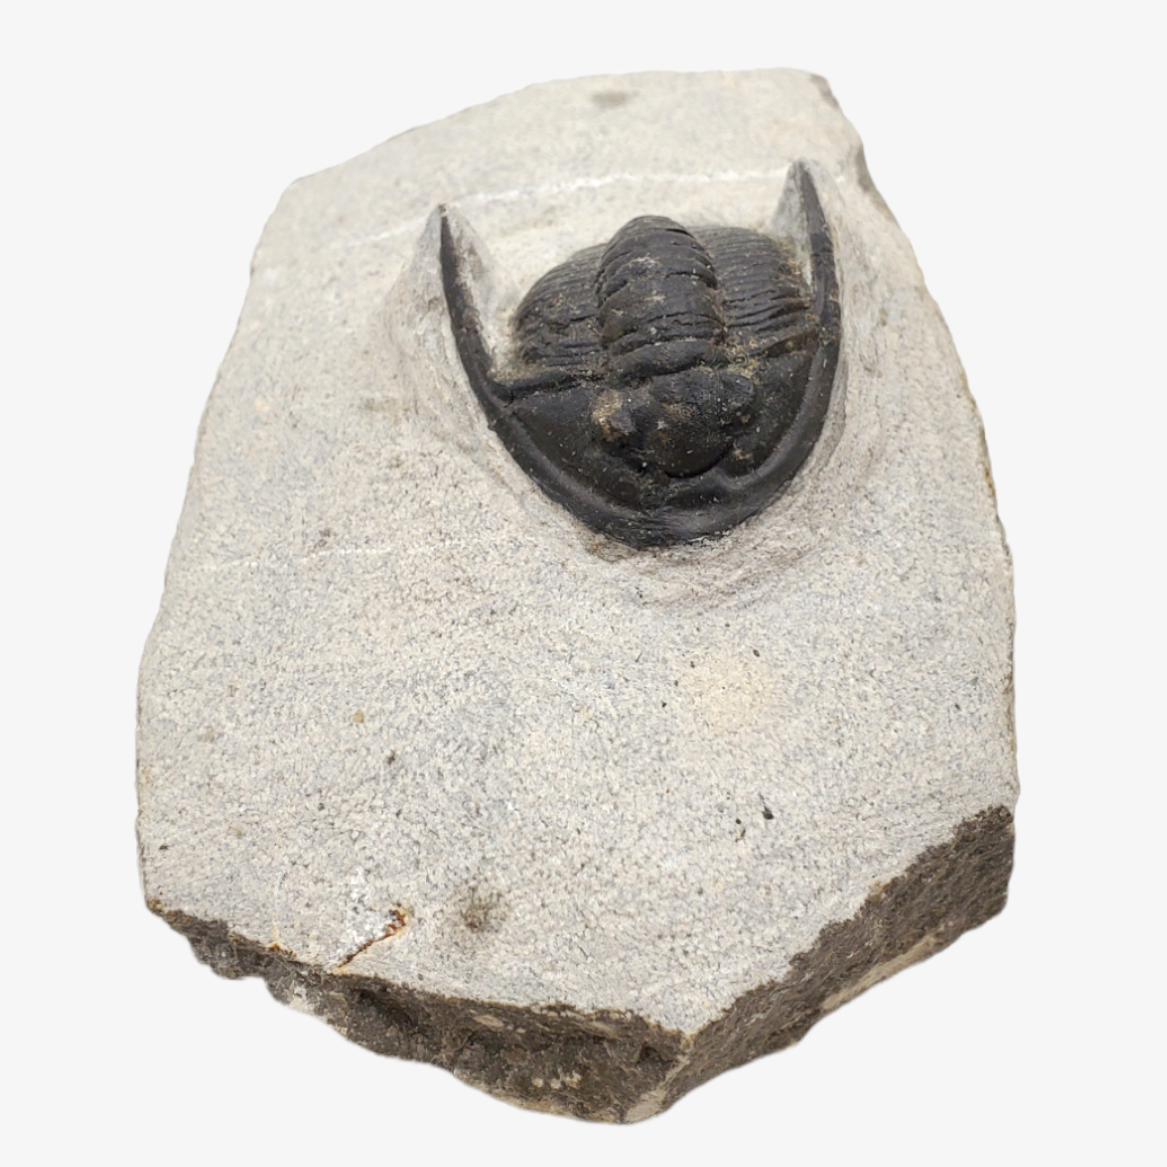 Metacanthina Trilobite Fossil